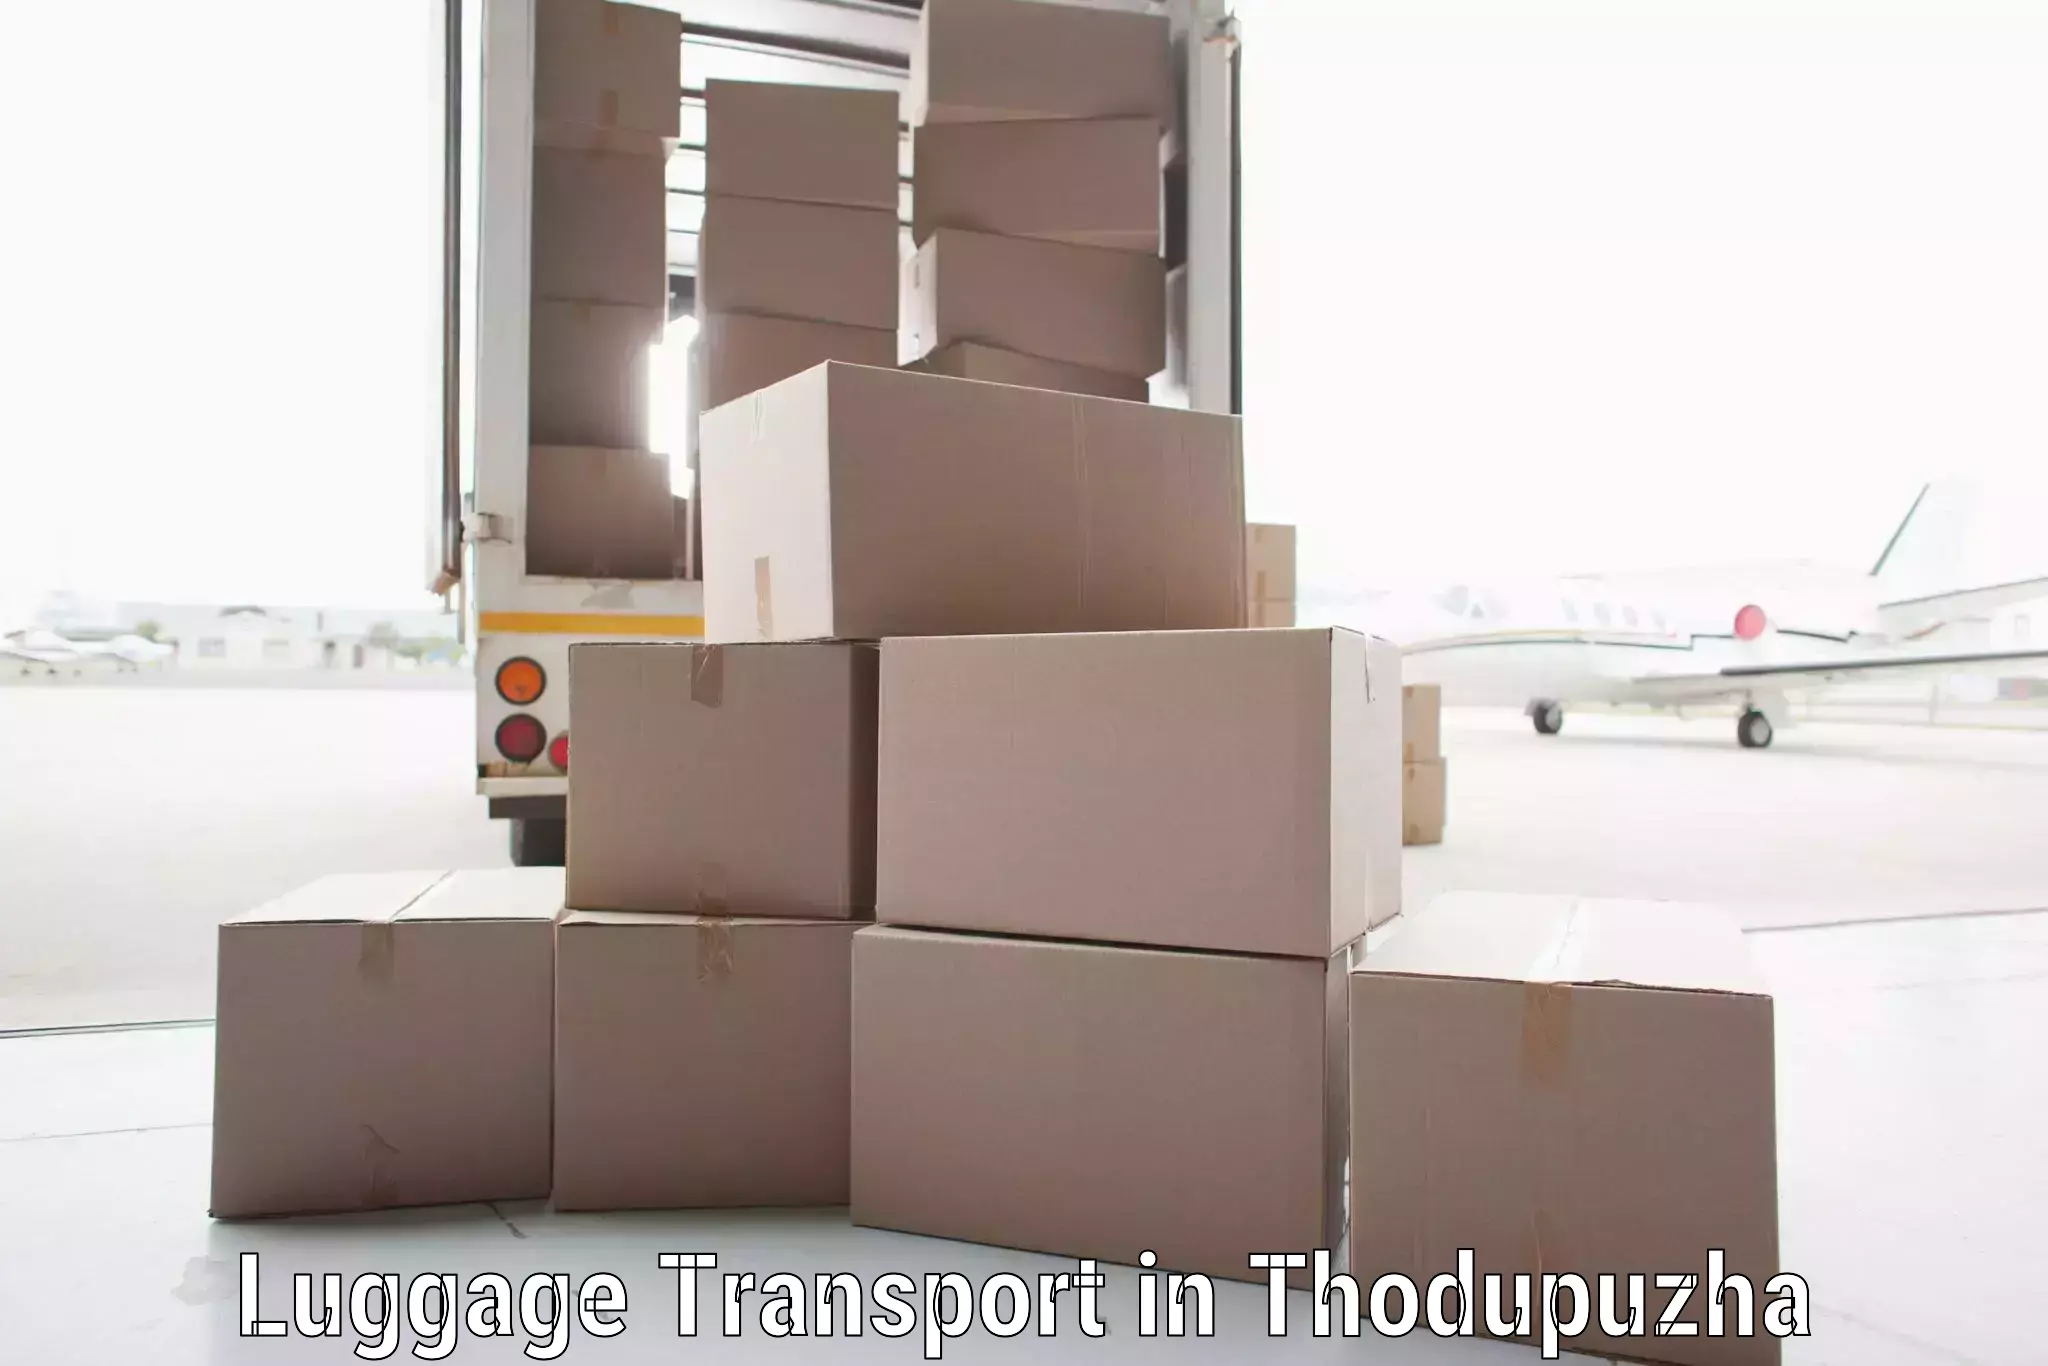 Luggage transfer service in Thodupuzha